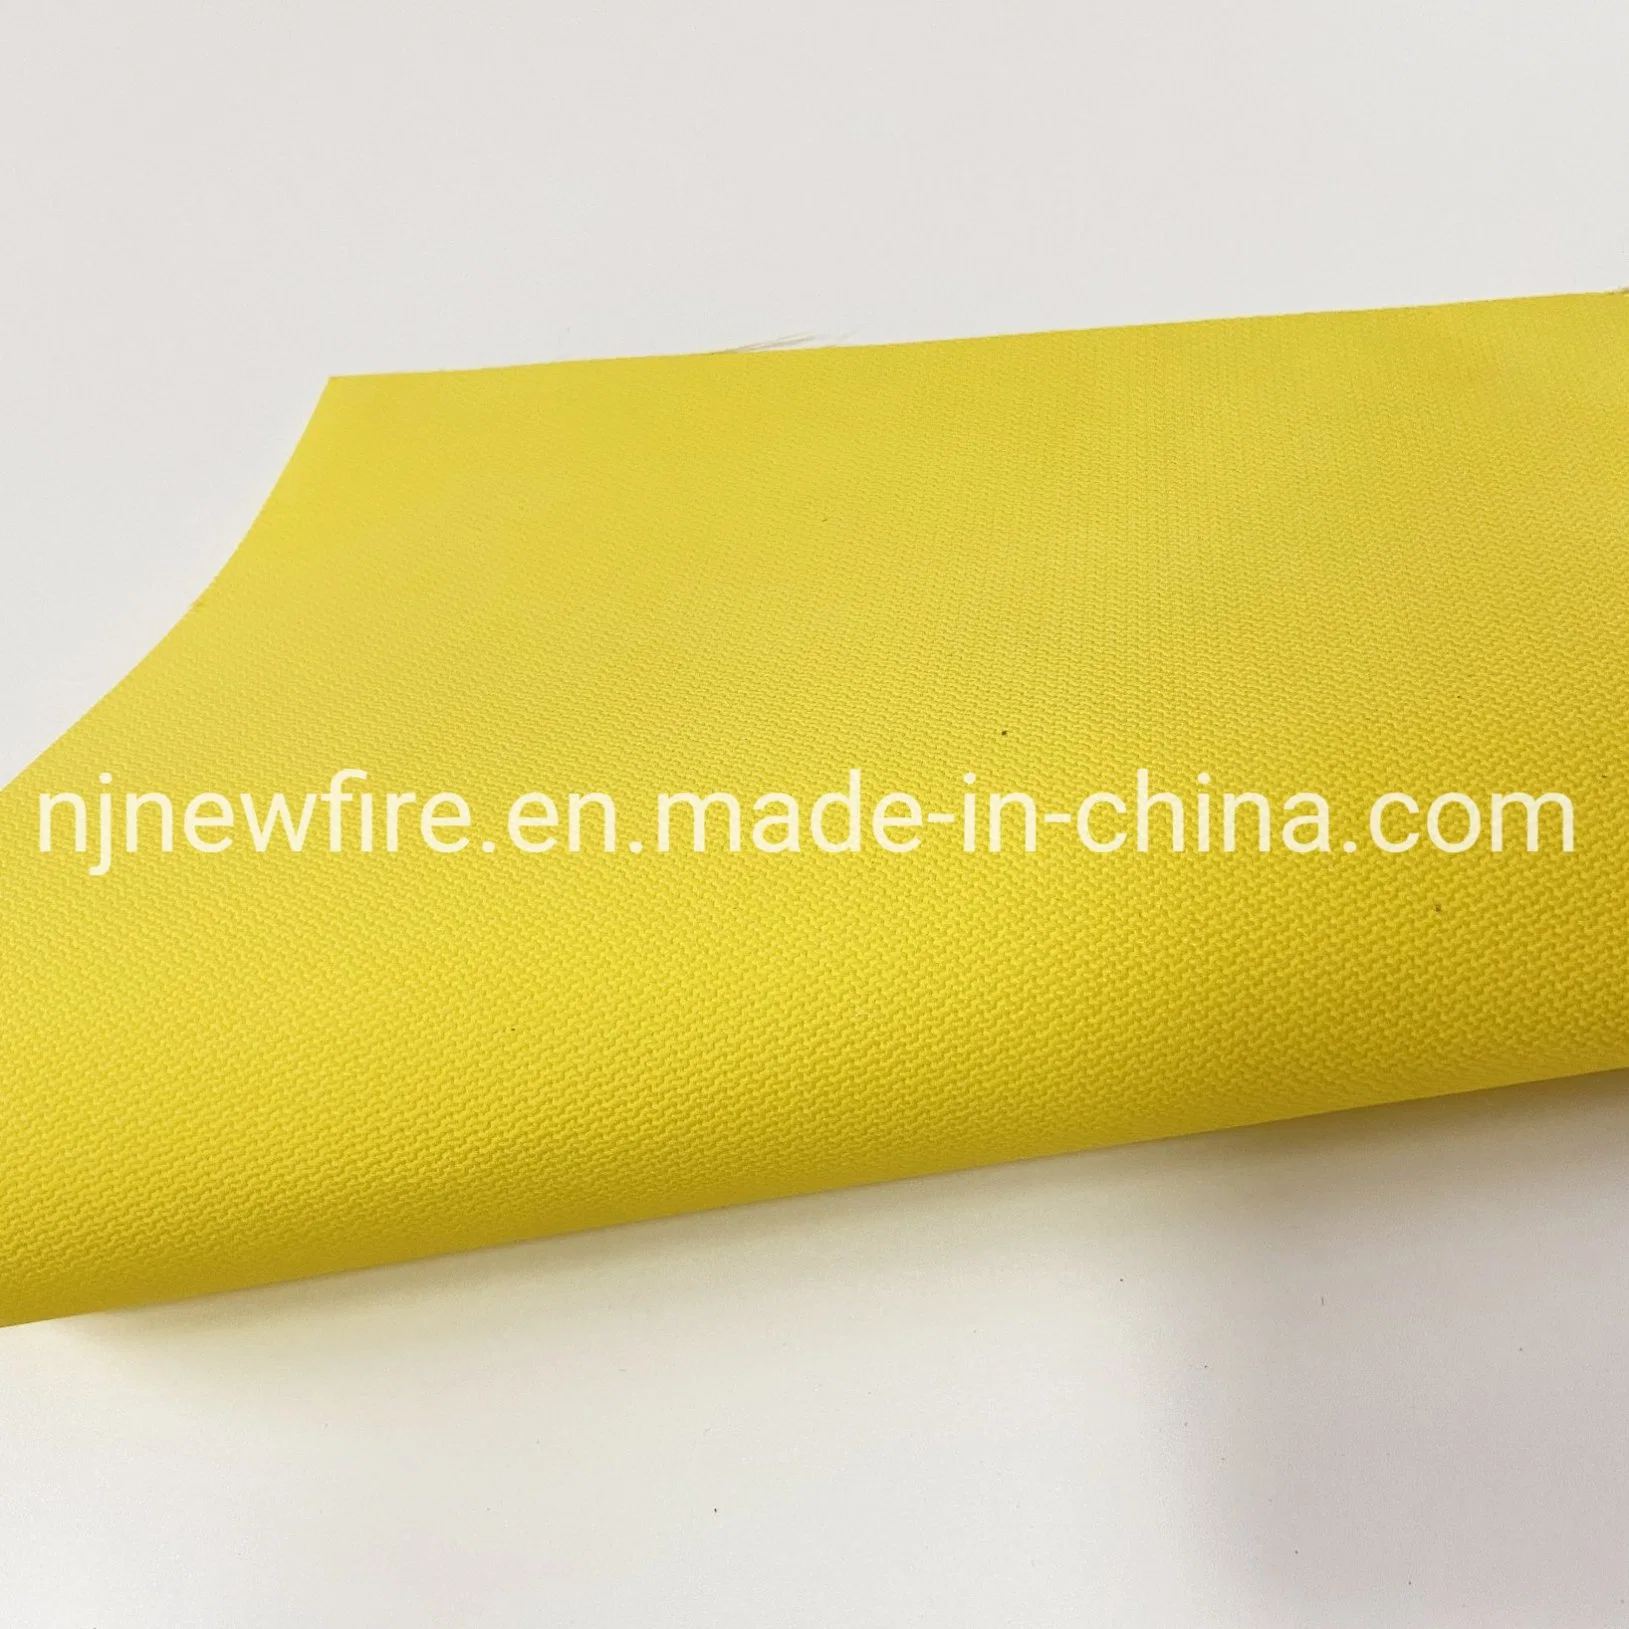 Fabricante de fibra de vidrio de alta calidad de caucho de silicona de malla de fibra de vidrio con doble recubrimiento Calendred tejido retardante de fuego